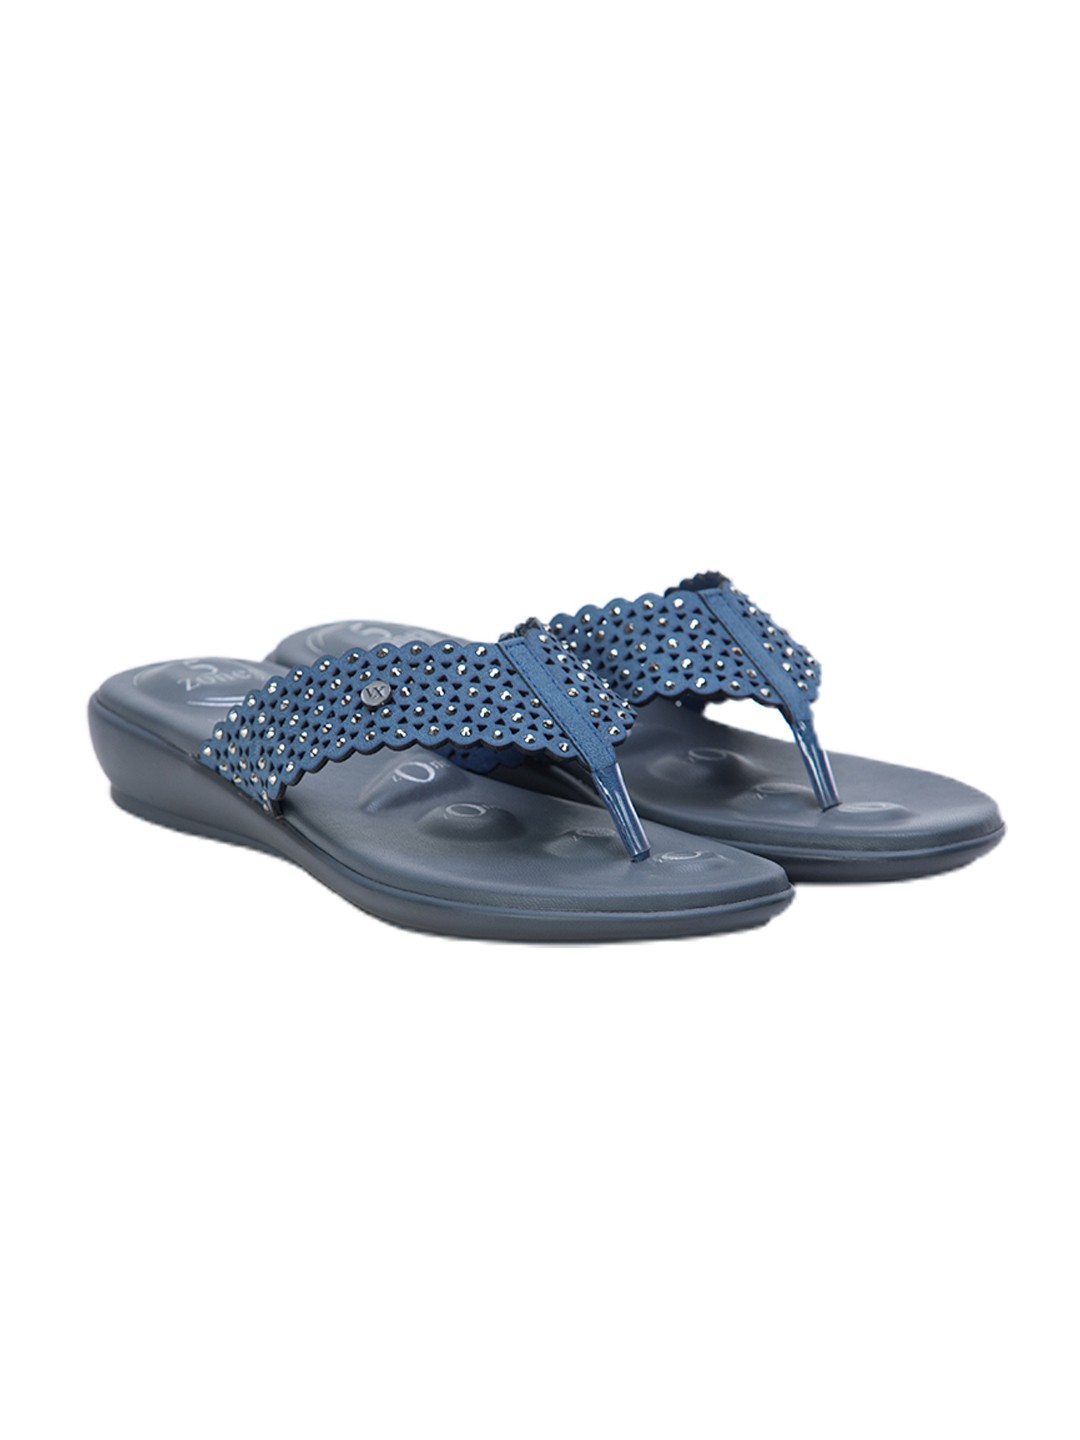 Buy Von Wellx Germany Comfort Gleam Blue Slippers Online in Sharjah